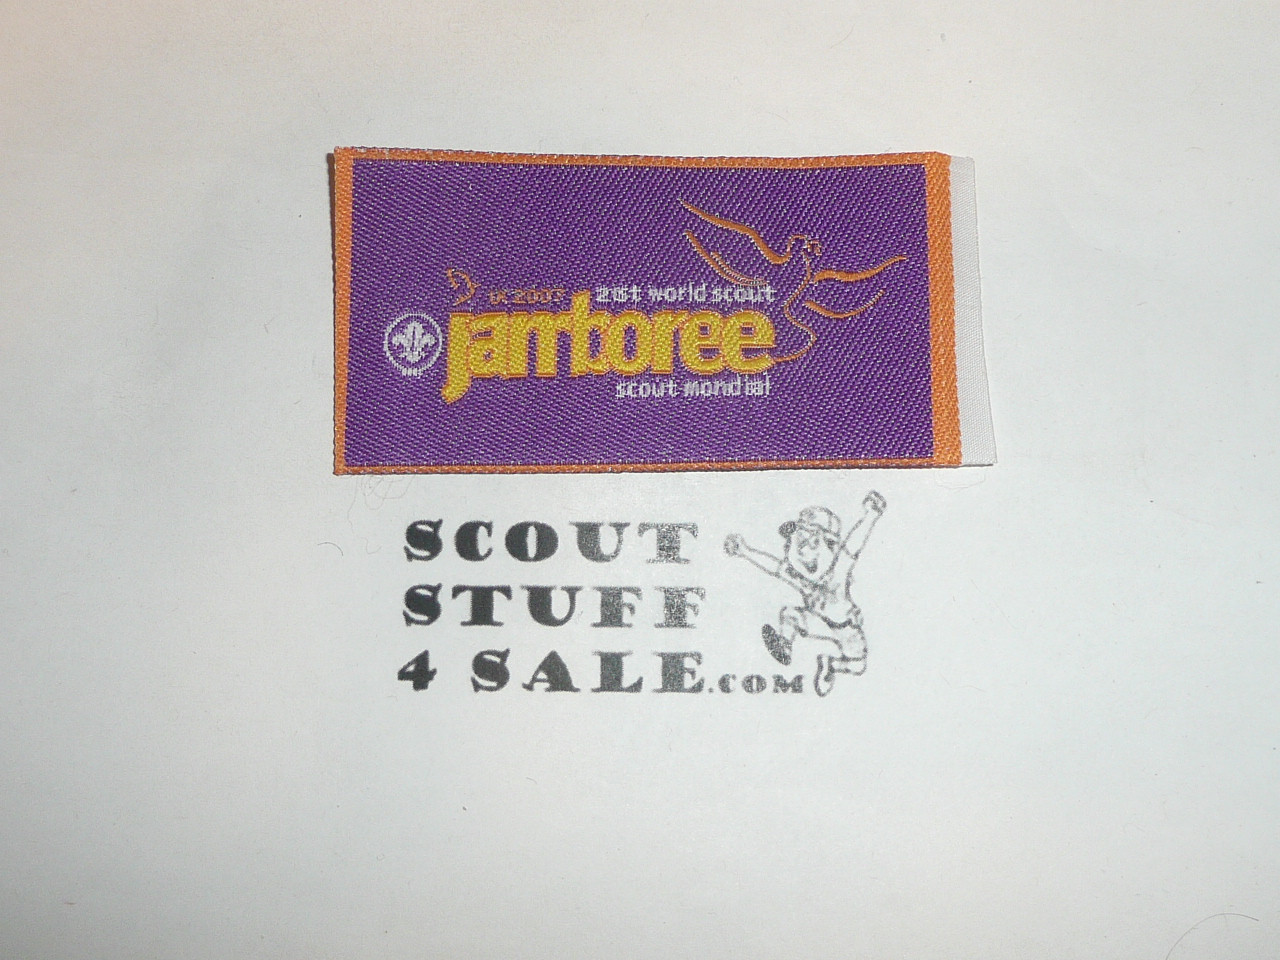 2007 Boy Scout World Jamboree Woven Patch, purple